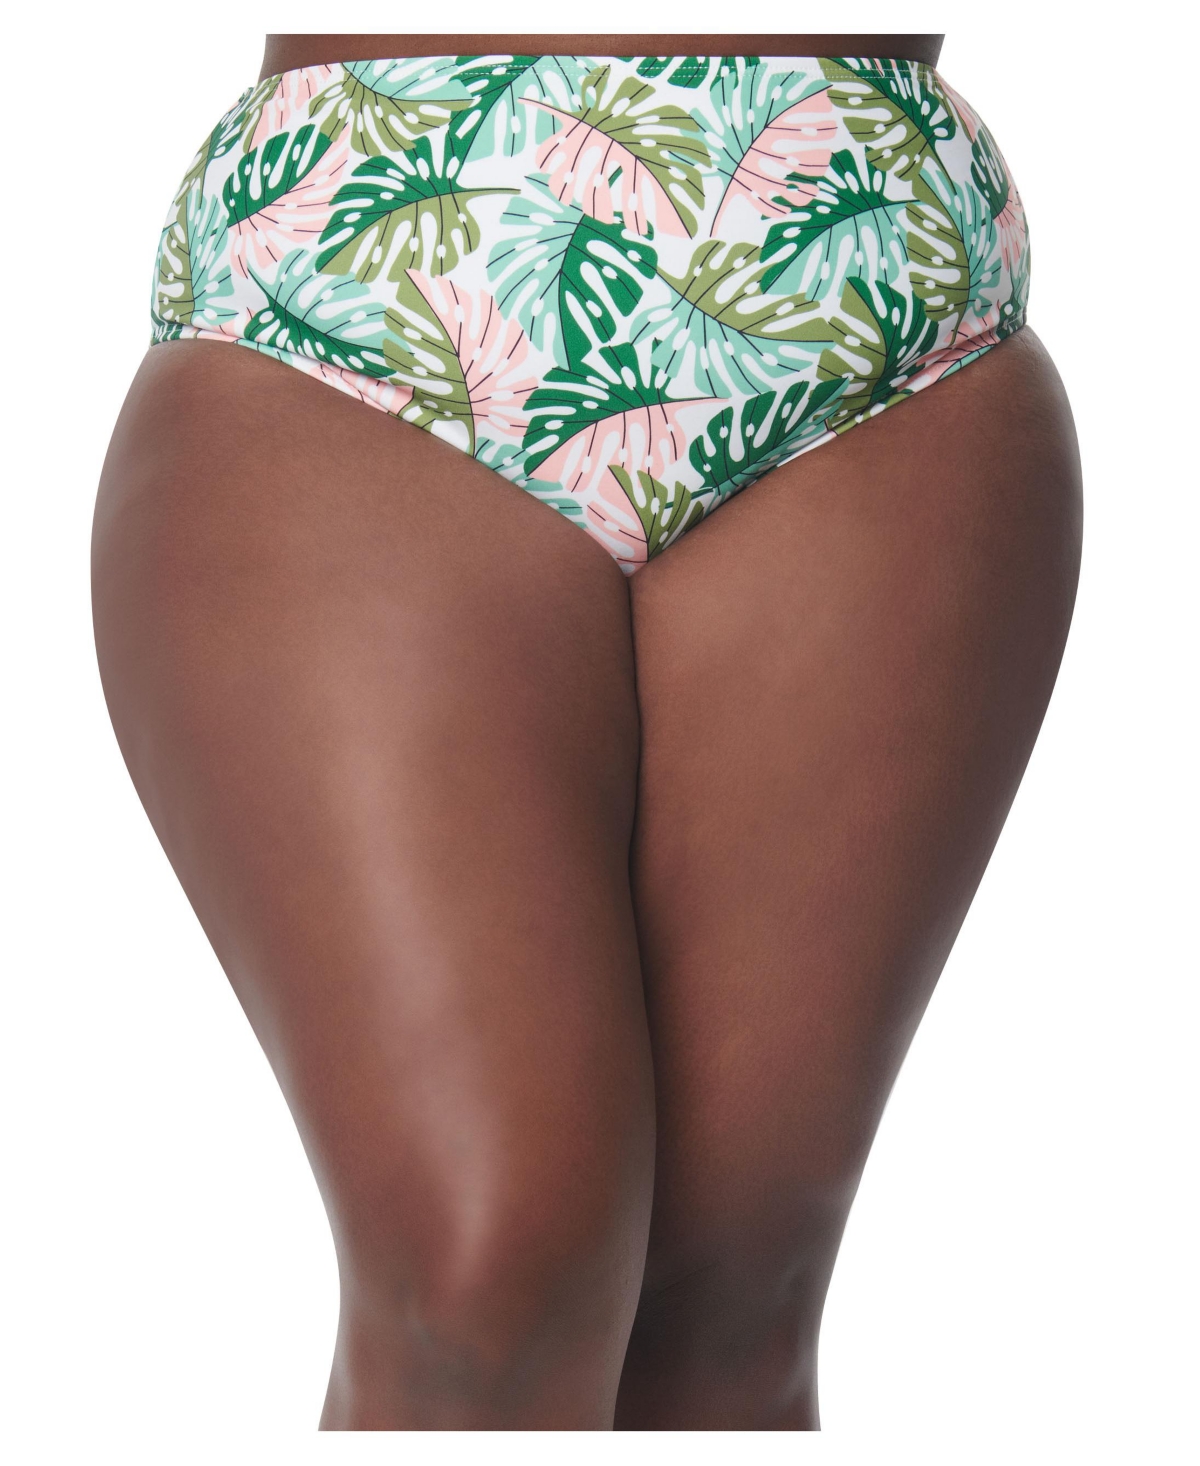 Plus Size High Leg Daphne Swim Bottoms - Green/pink monstera print